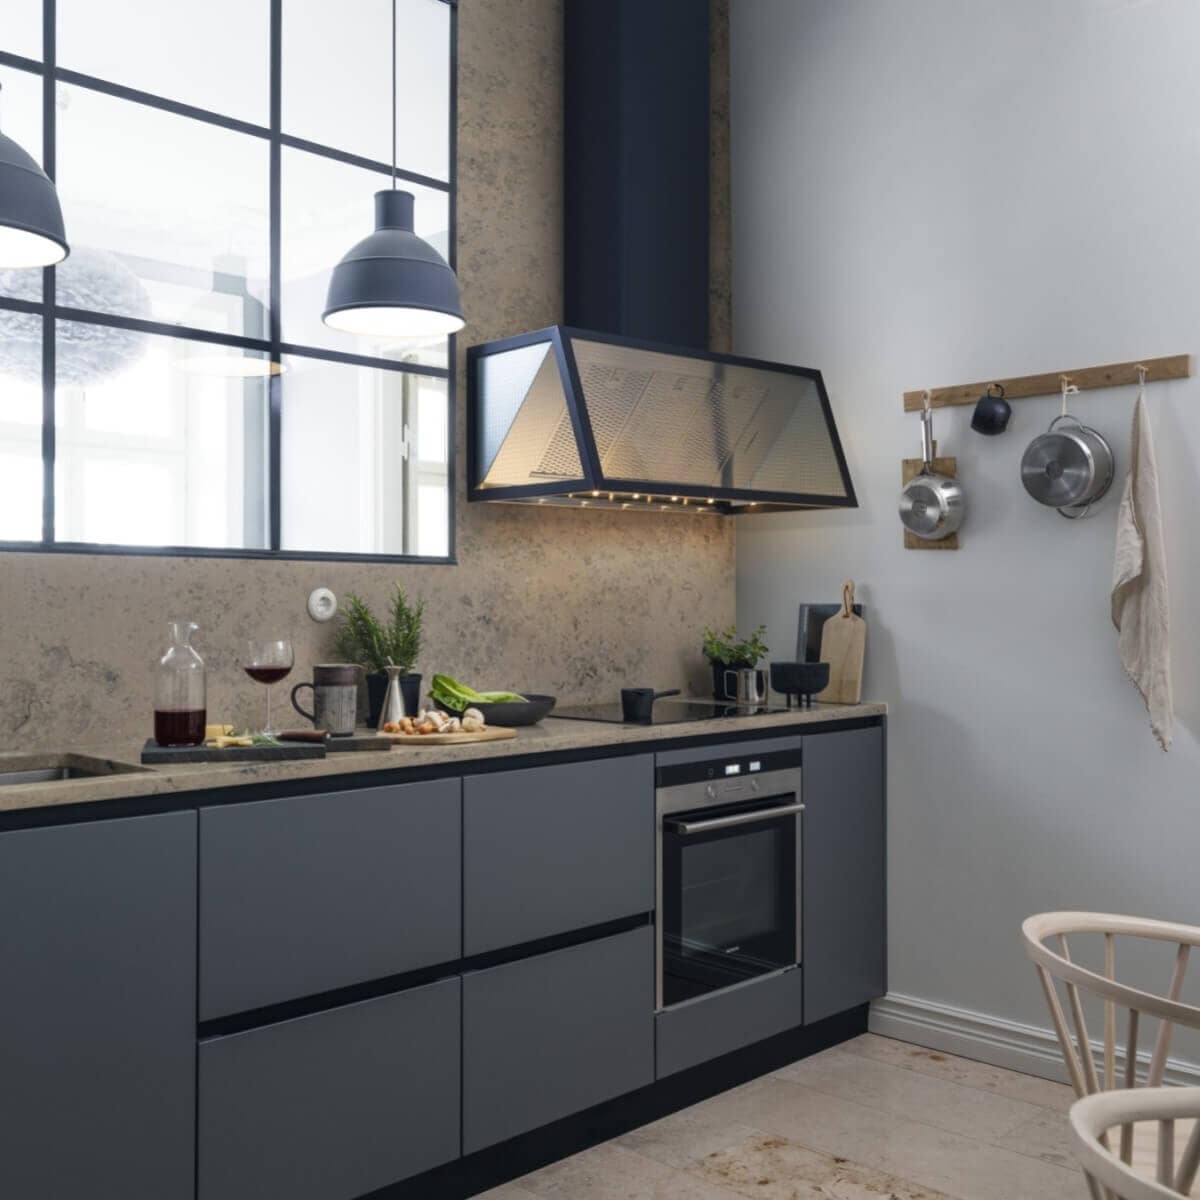 Vägghängda köksfläkten Fasett i svart utförande i modern köksmiljö med industrifönster och gråblåa köksluckor.